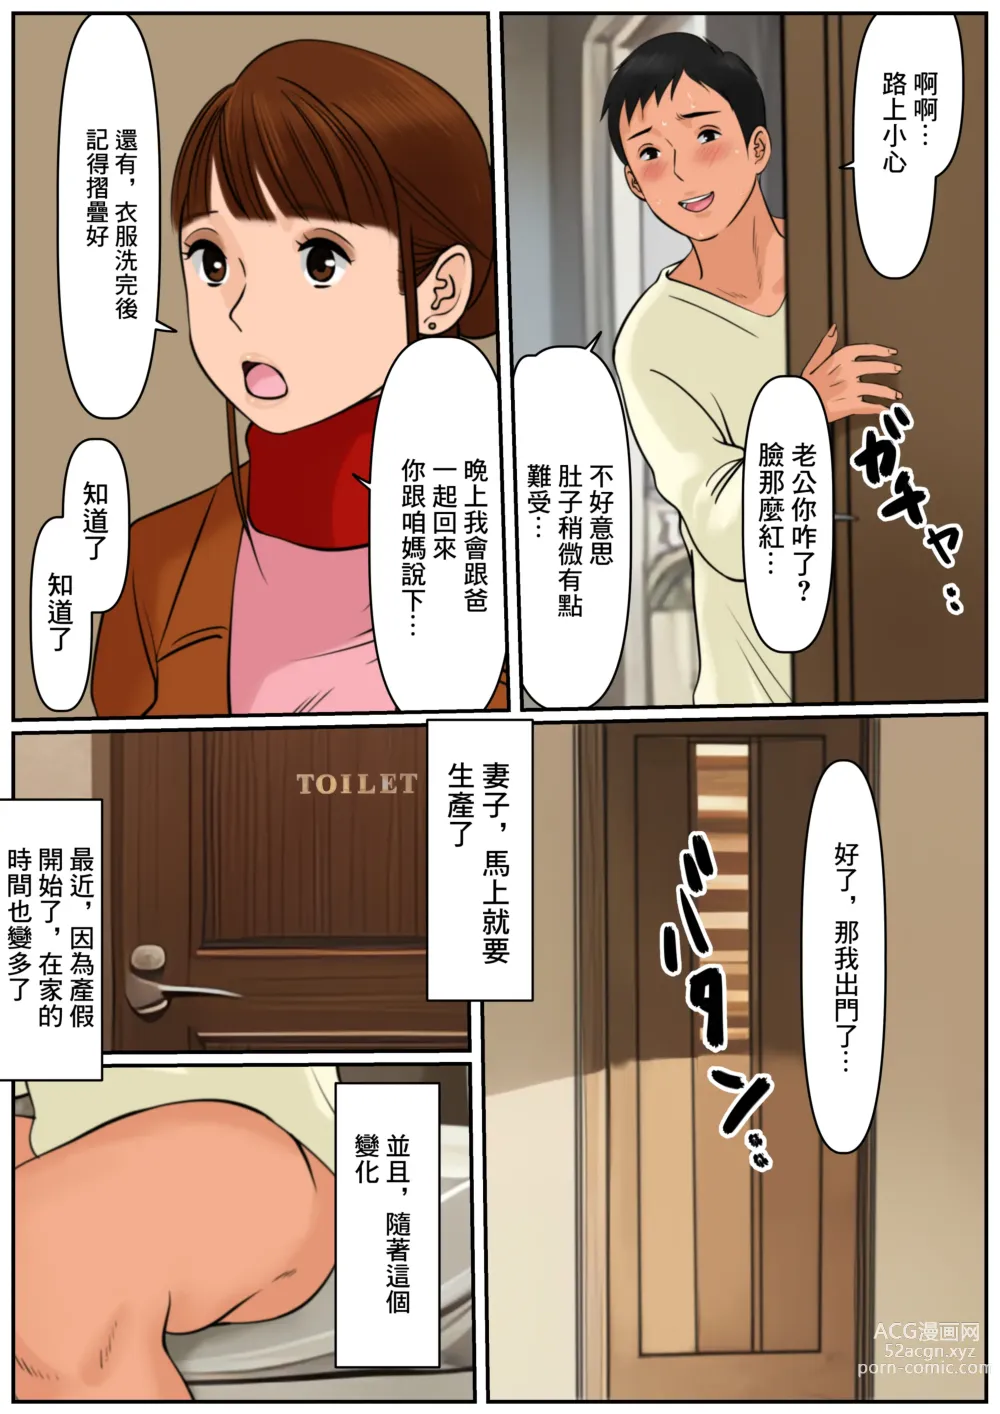 Page 10 of doujinshi 難道你是嫌棄我這個媽媽嗎?